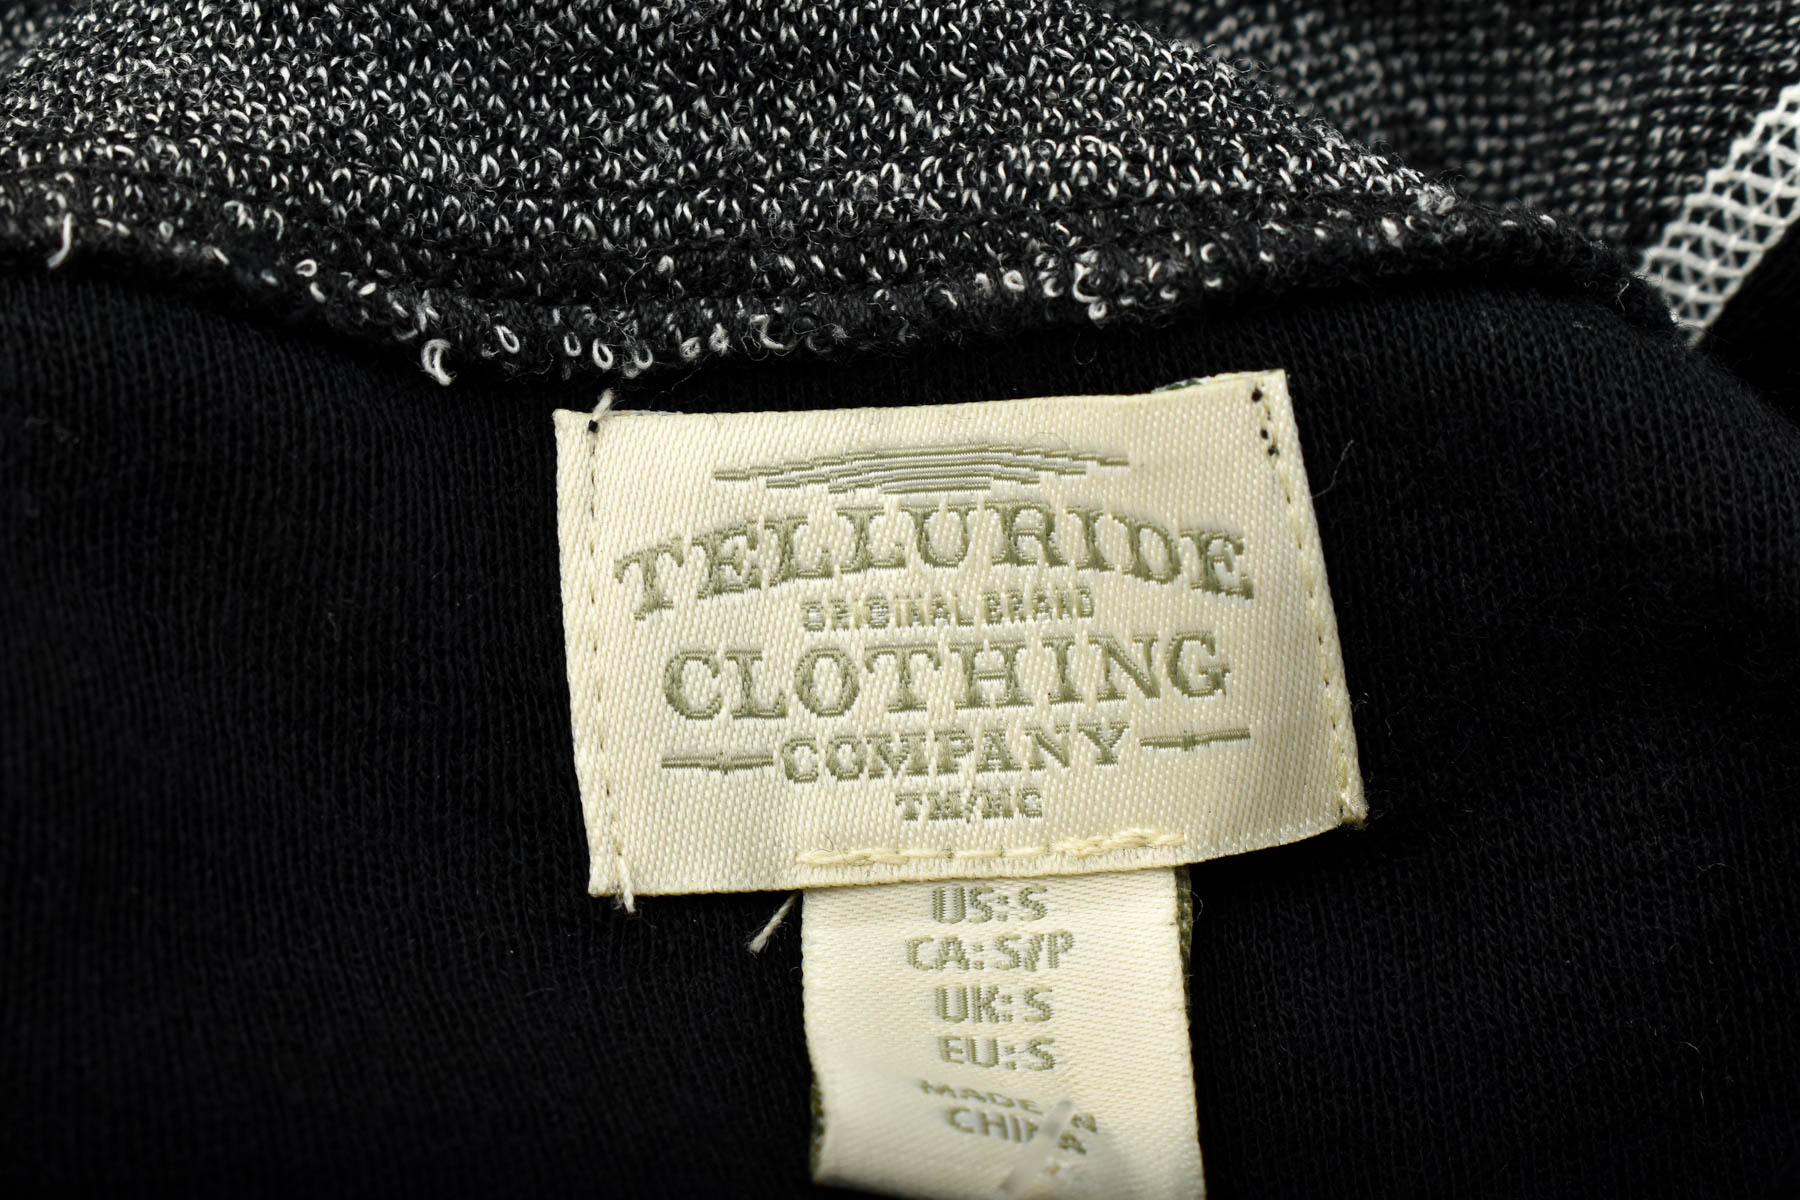 Bluza de sport pentru femei - Telluride Clothing Company - 2